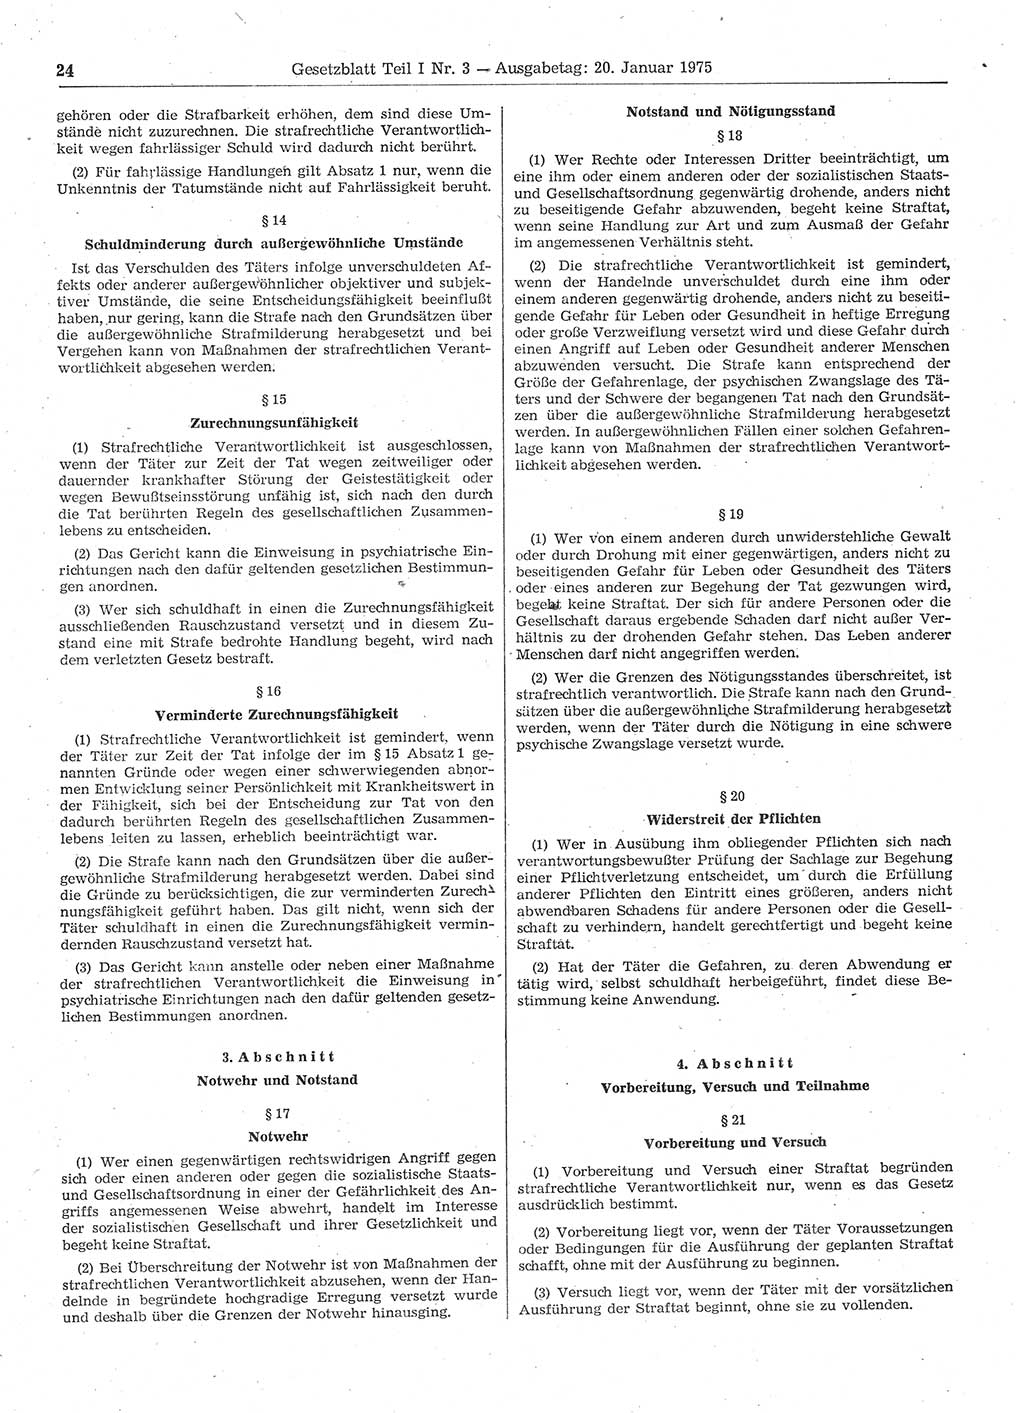 Gesetzblatt (GBl.) der Deutschen Demokratischen Republik (DDR) Teil Ⅰ 1975, Seite 24 (GBl. DDR Ⅰ 1975, S. 24)